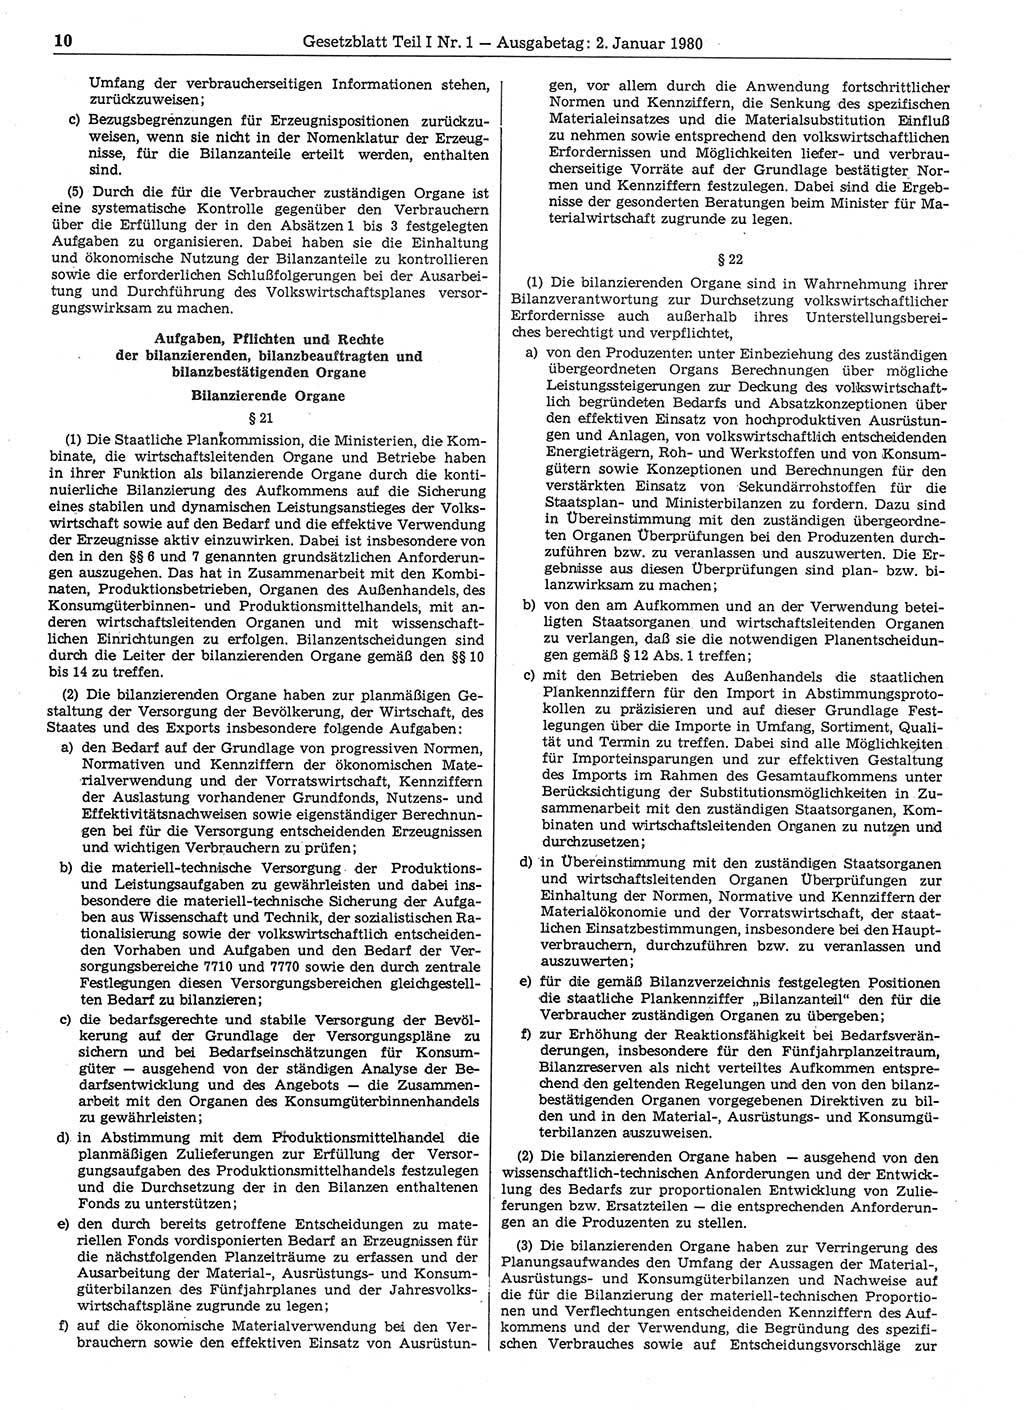 Gesetzblatt (GBl.) der Deutschen Demokratischen Republik (DDR) Teil Ⅰ 1980, Seite 10 (GBl. DDR Ⅰ 1980, S. 10)